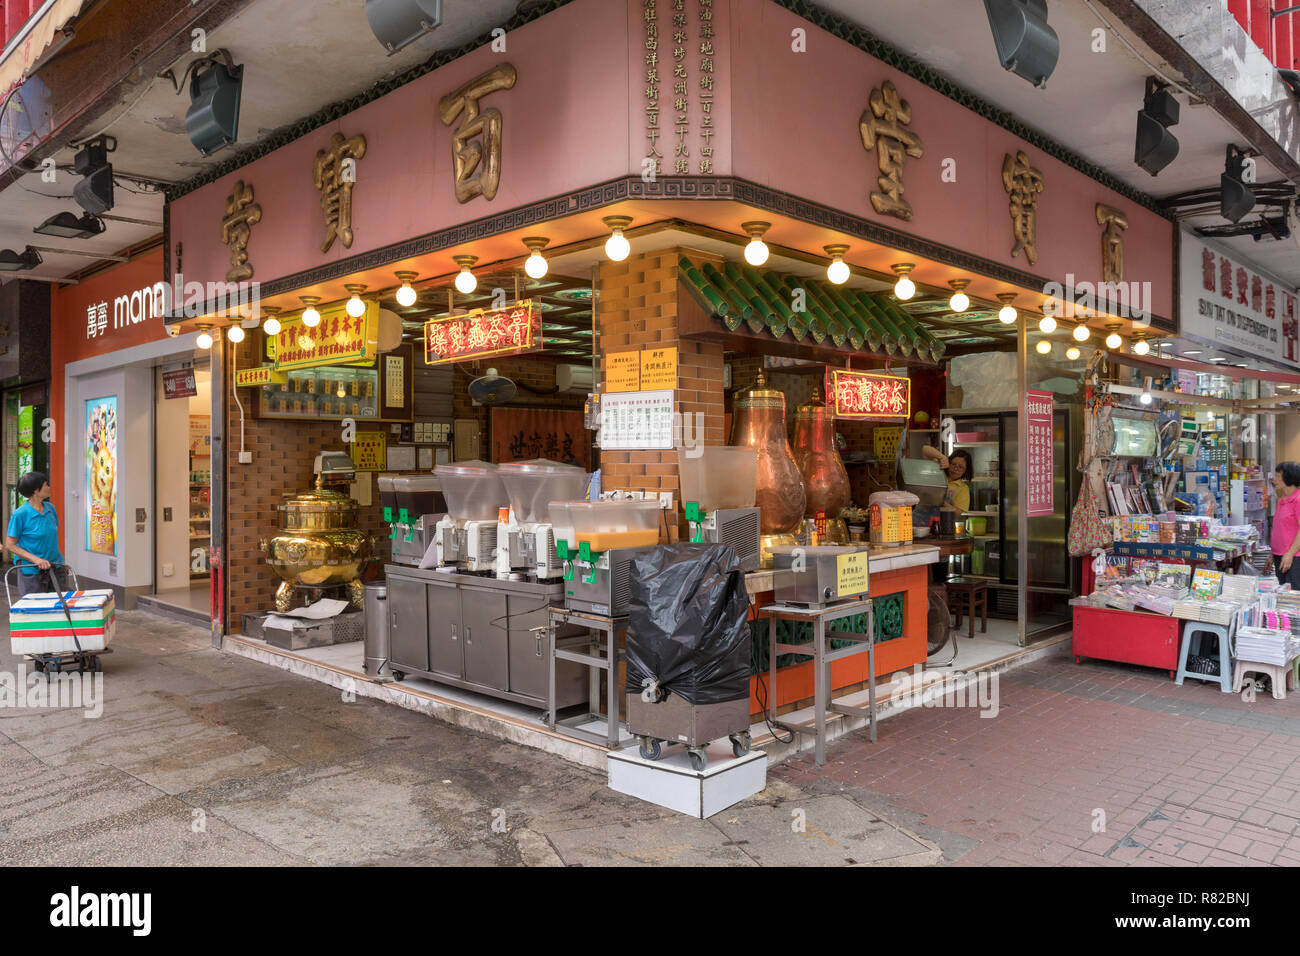 KOWLOON, HONG KONG - APRIL 21, 2017: Traditional Chinese Tea Shop at Bute Street in Kowloon, Hong Kong. Stock Photo